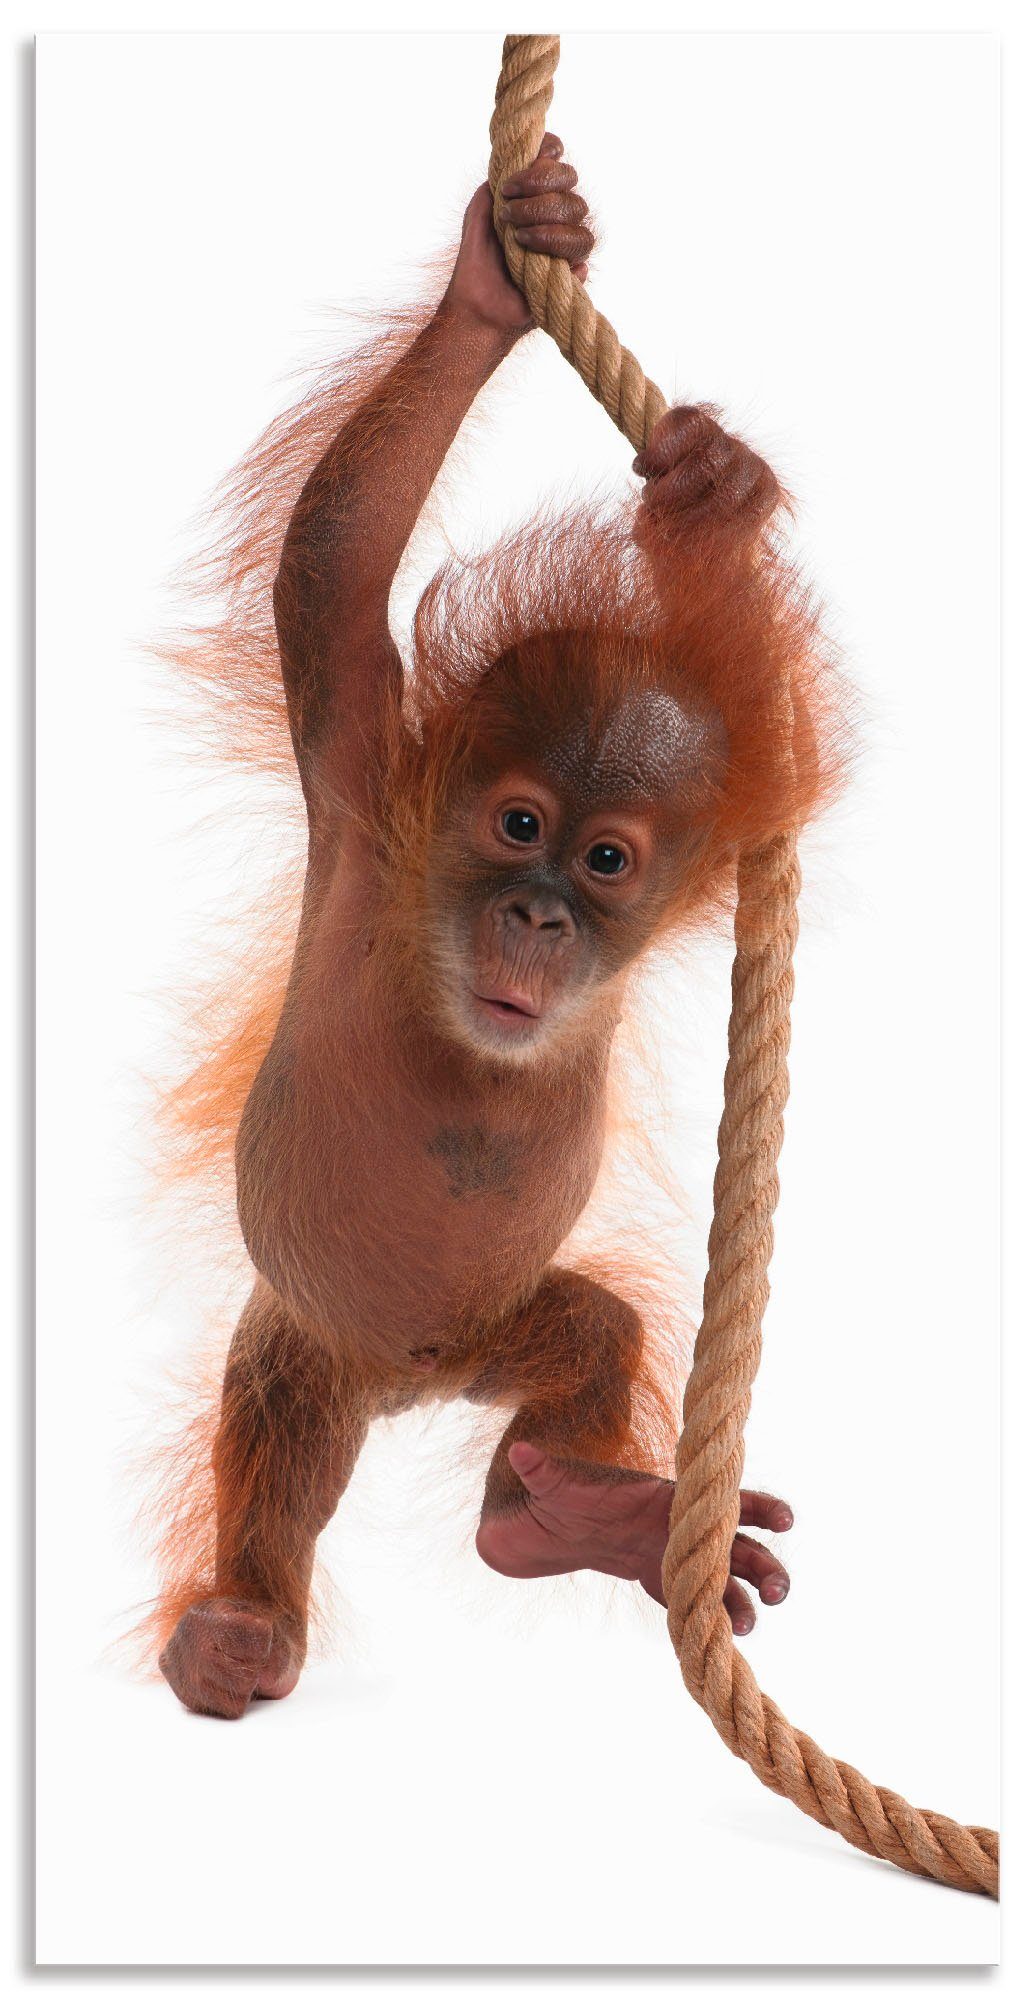 Artland Artprint Baby orang oetan hangt aan het touw I in vele afmetingen & productsoorten - artprint van aluminium / artprint voor buiten, artprint op linnen, poster, muursticker